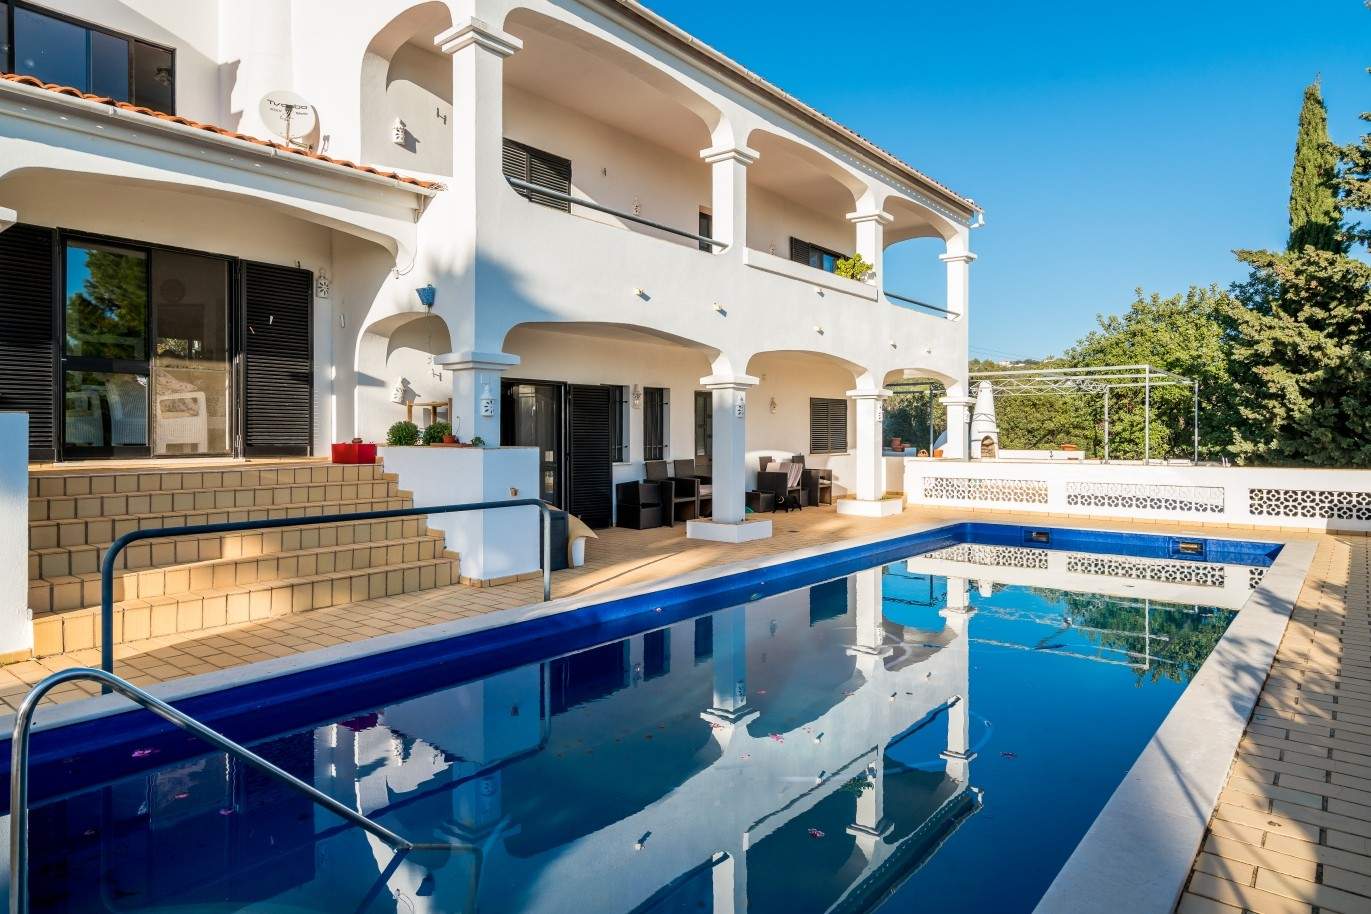 Propriedade à venda, piscina, vista mar, Santa Bárbara Nexe, Algarve_72151